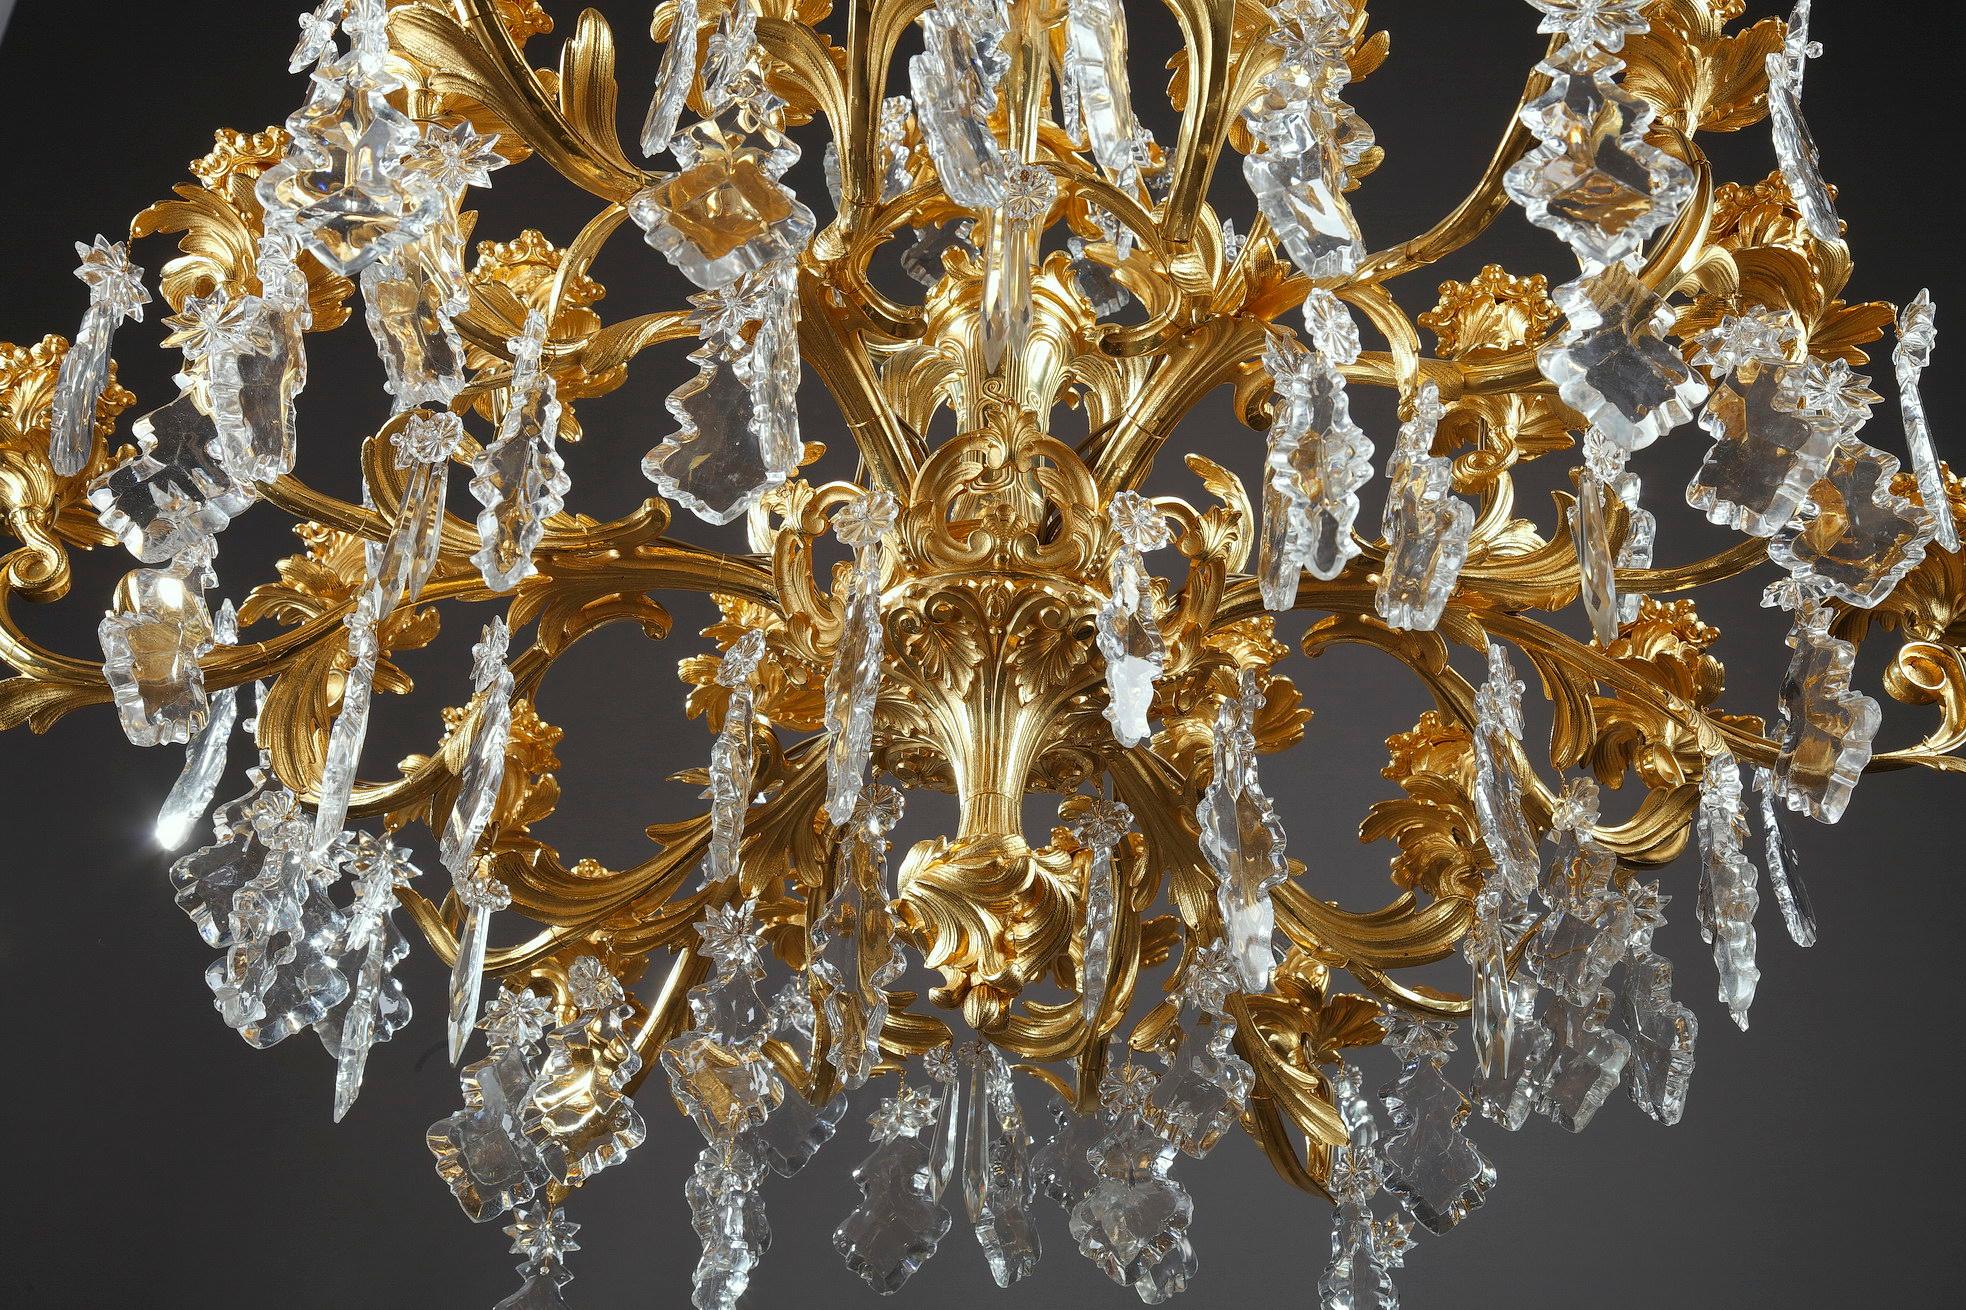 24-Light Chandelier in Louis XV Style 1